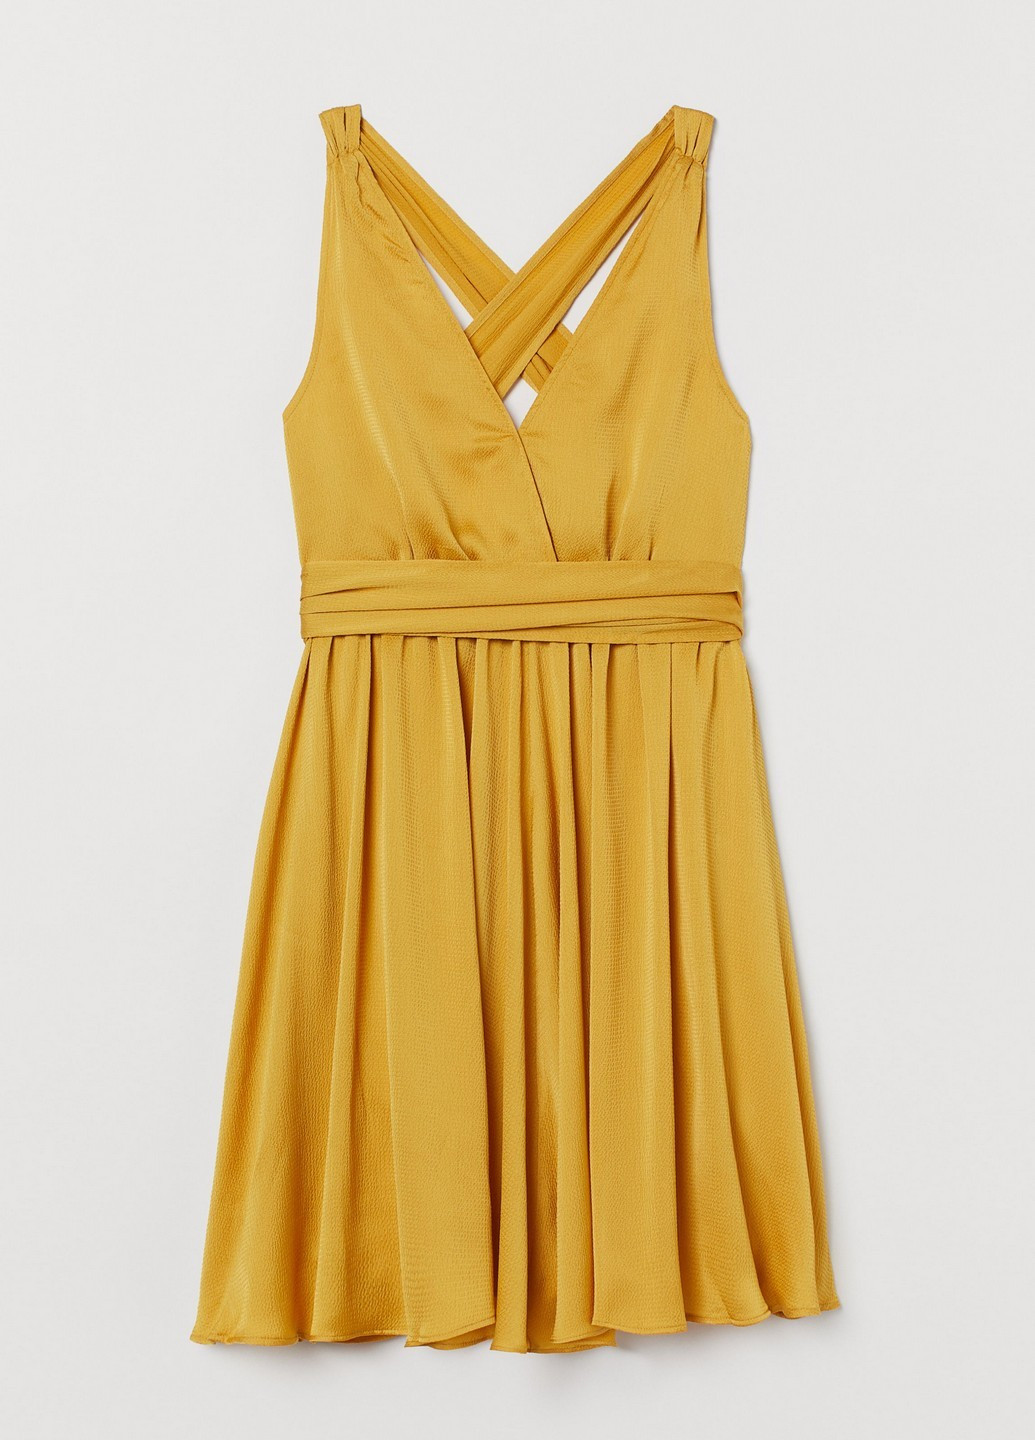 Желтое коктейльное платье H&M однотонное